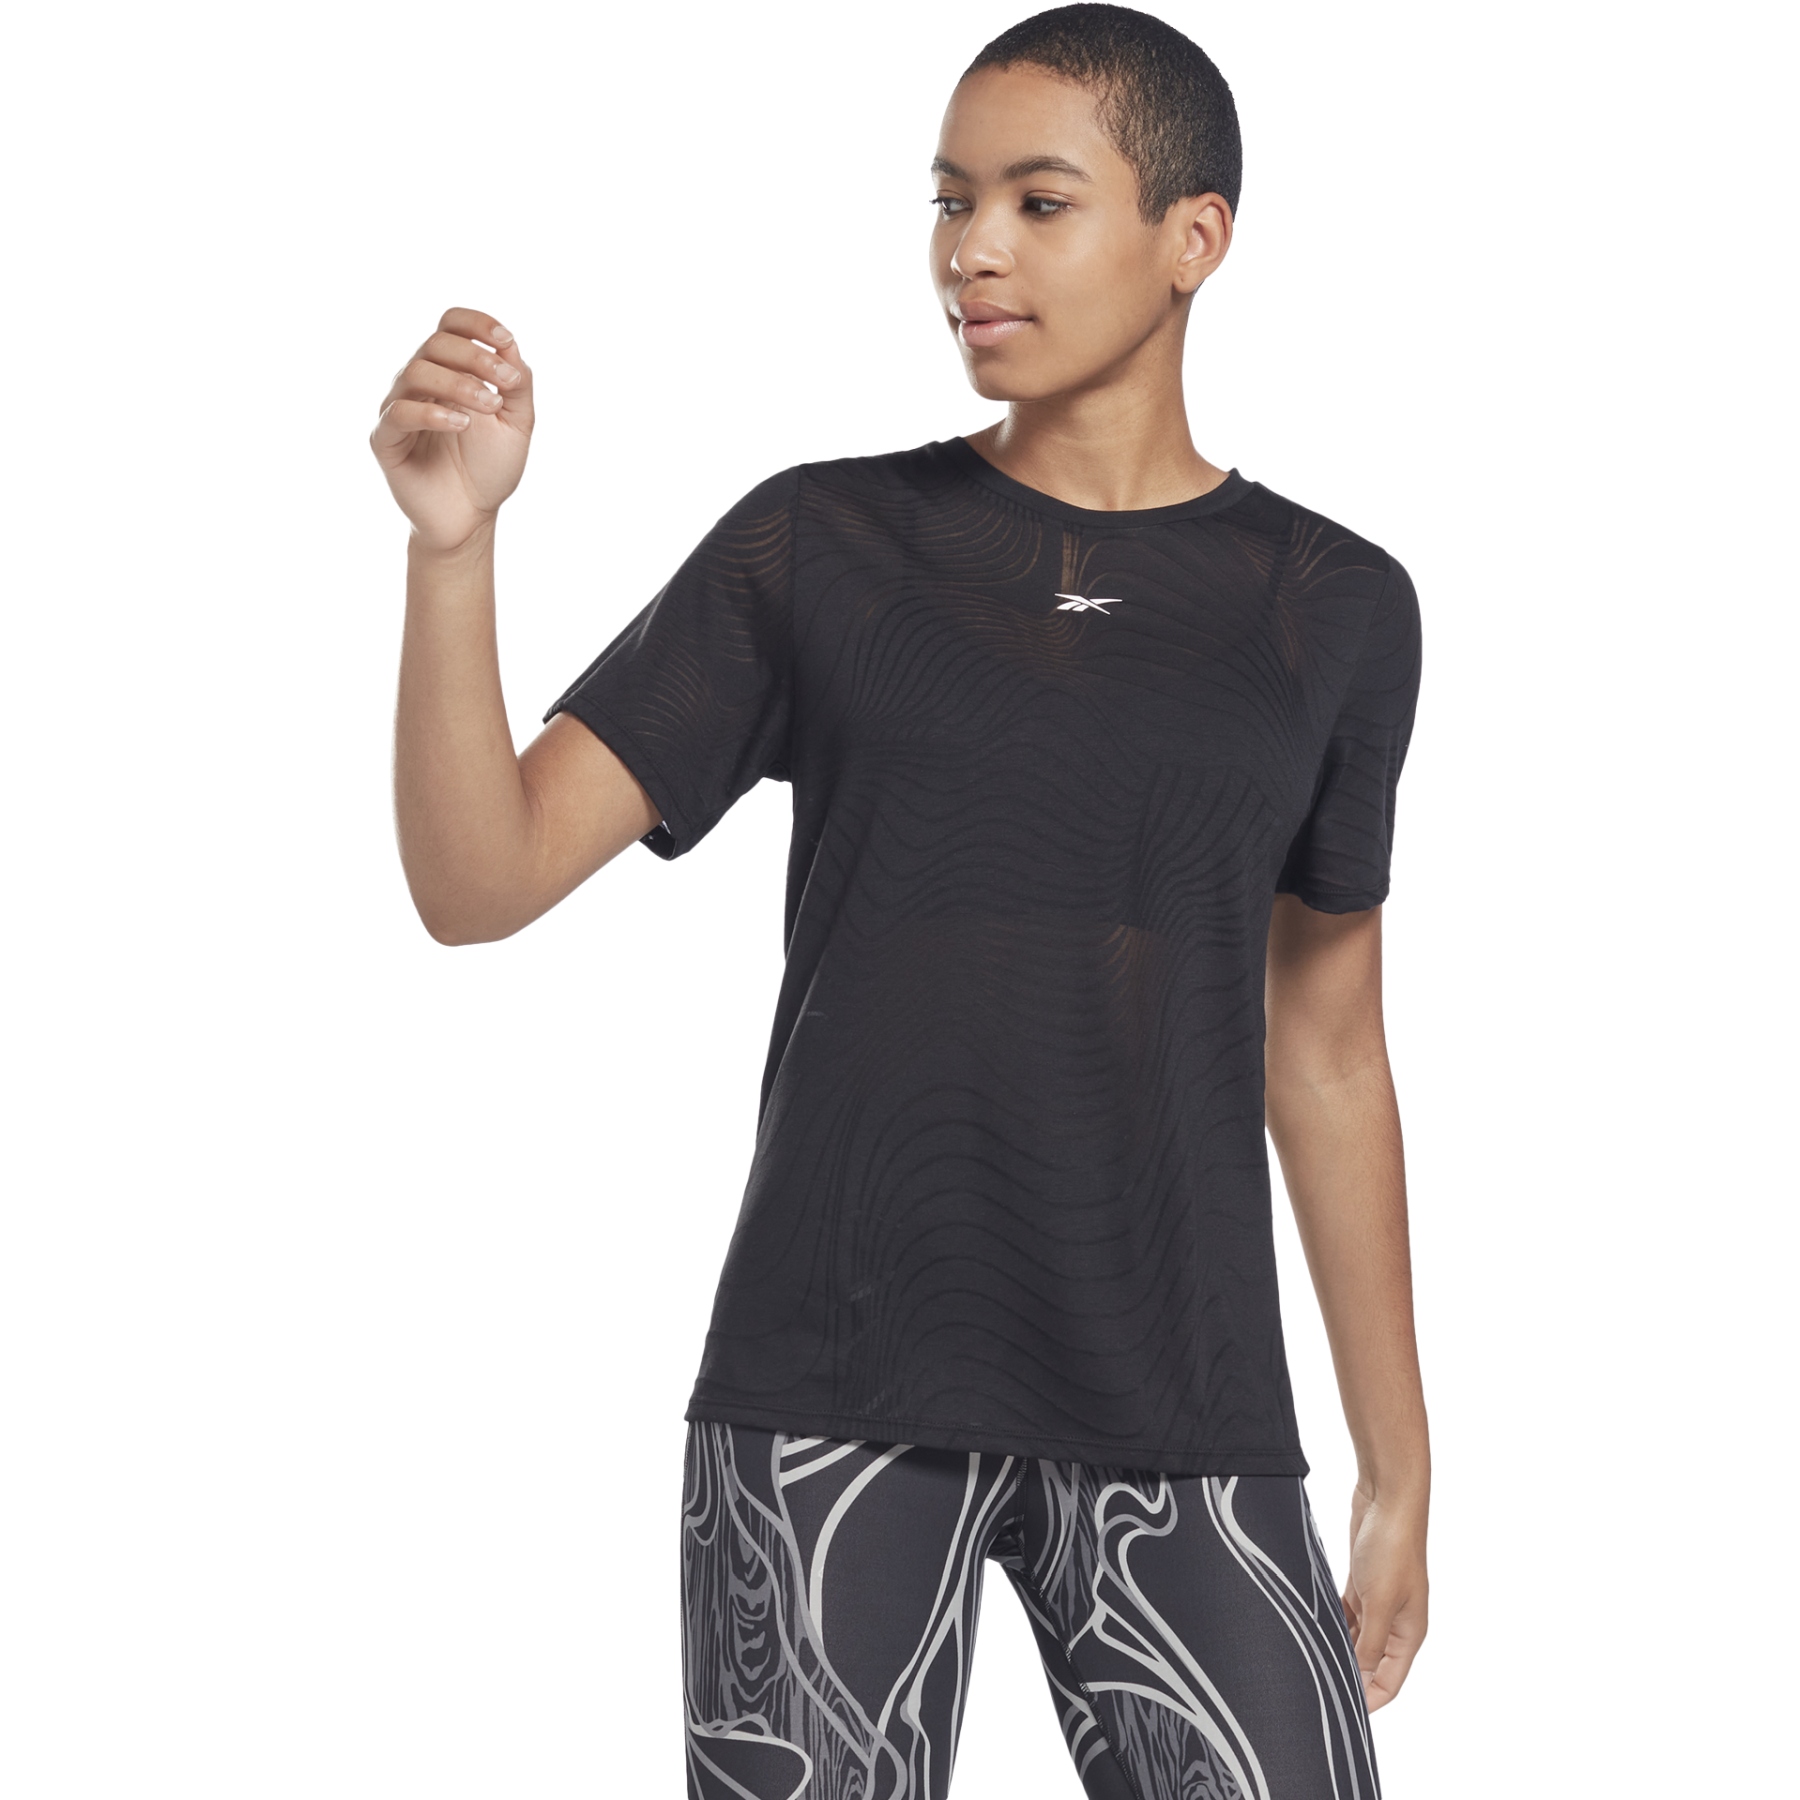 Produktbild von Reebok Burnout T-Shirt Damen - schwarz